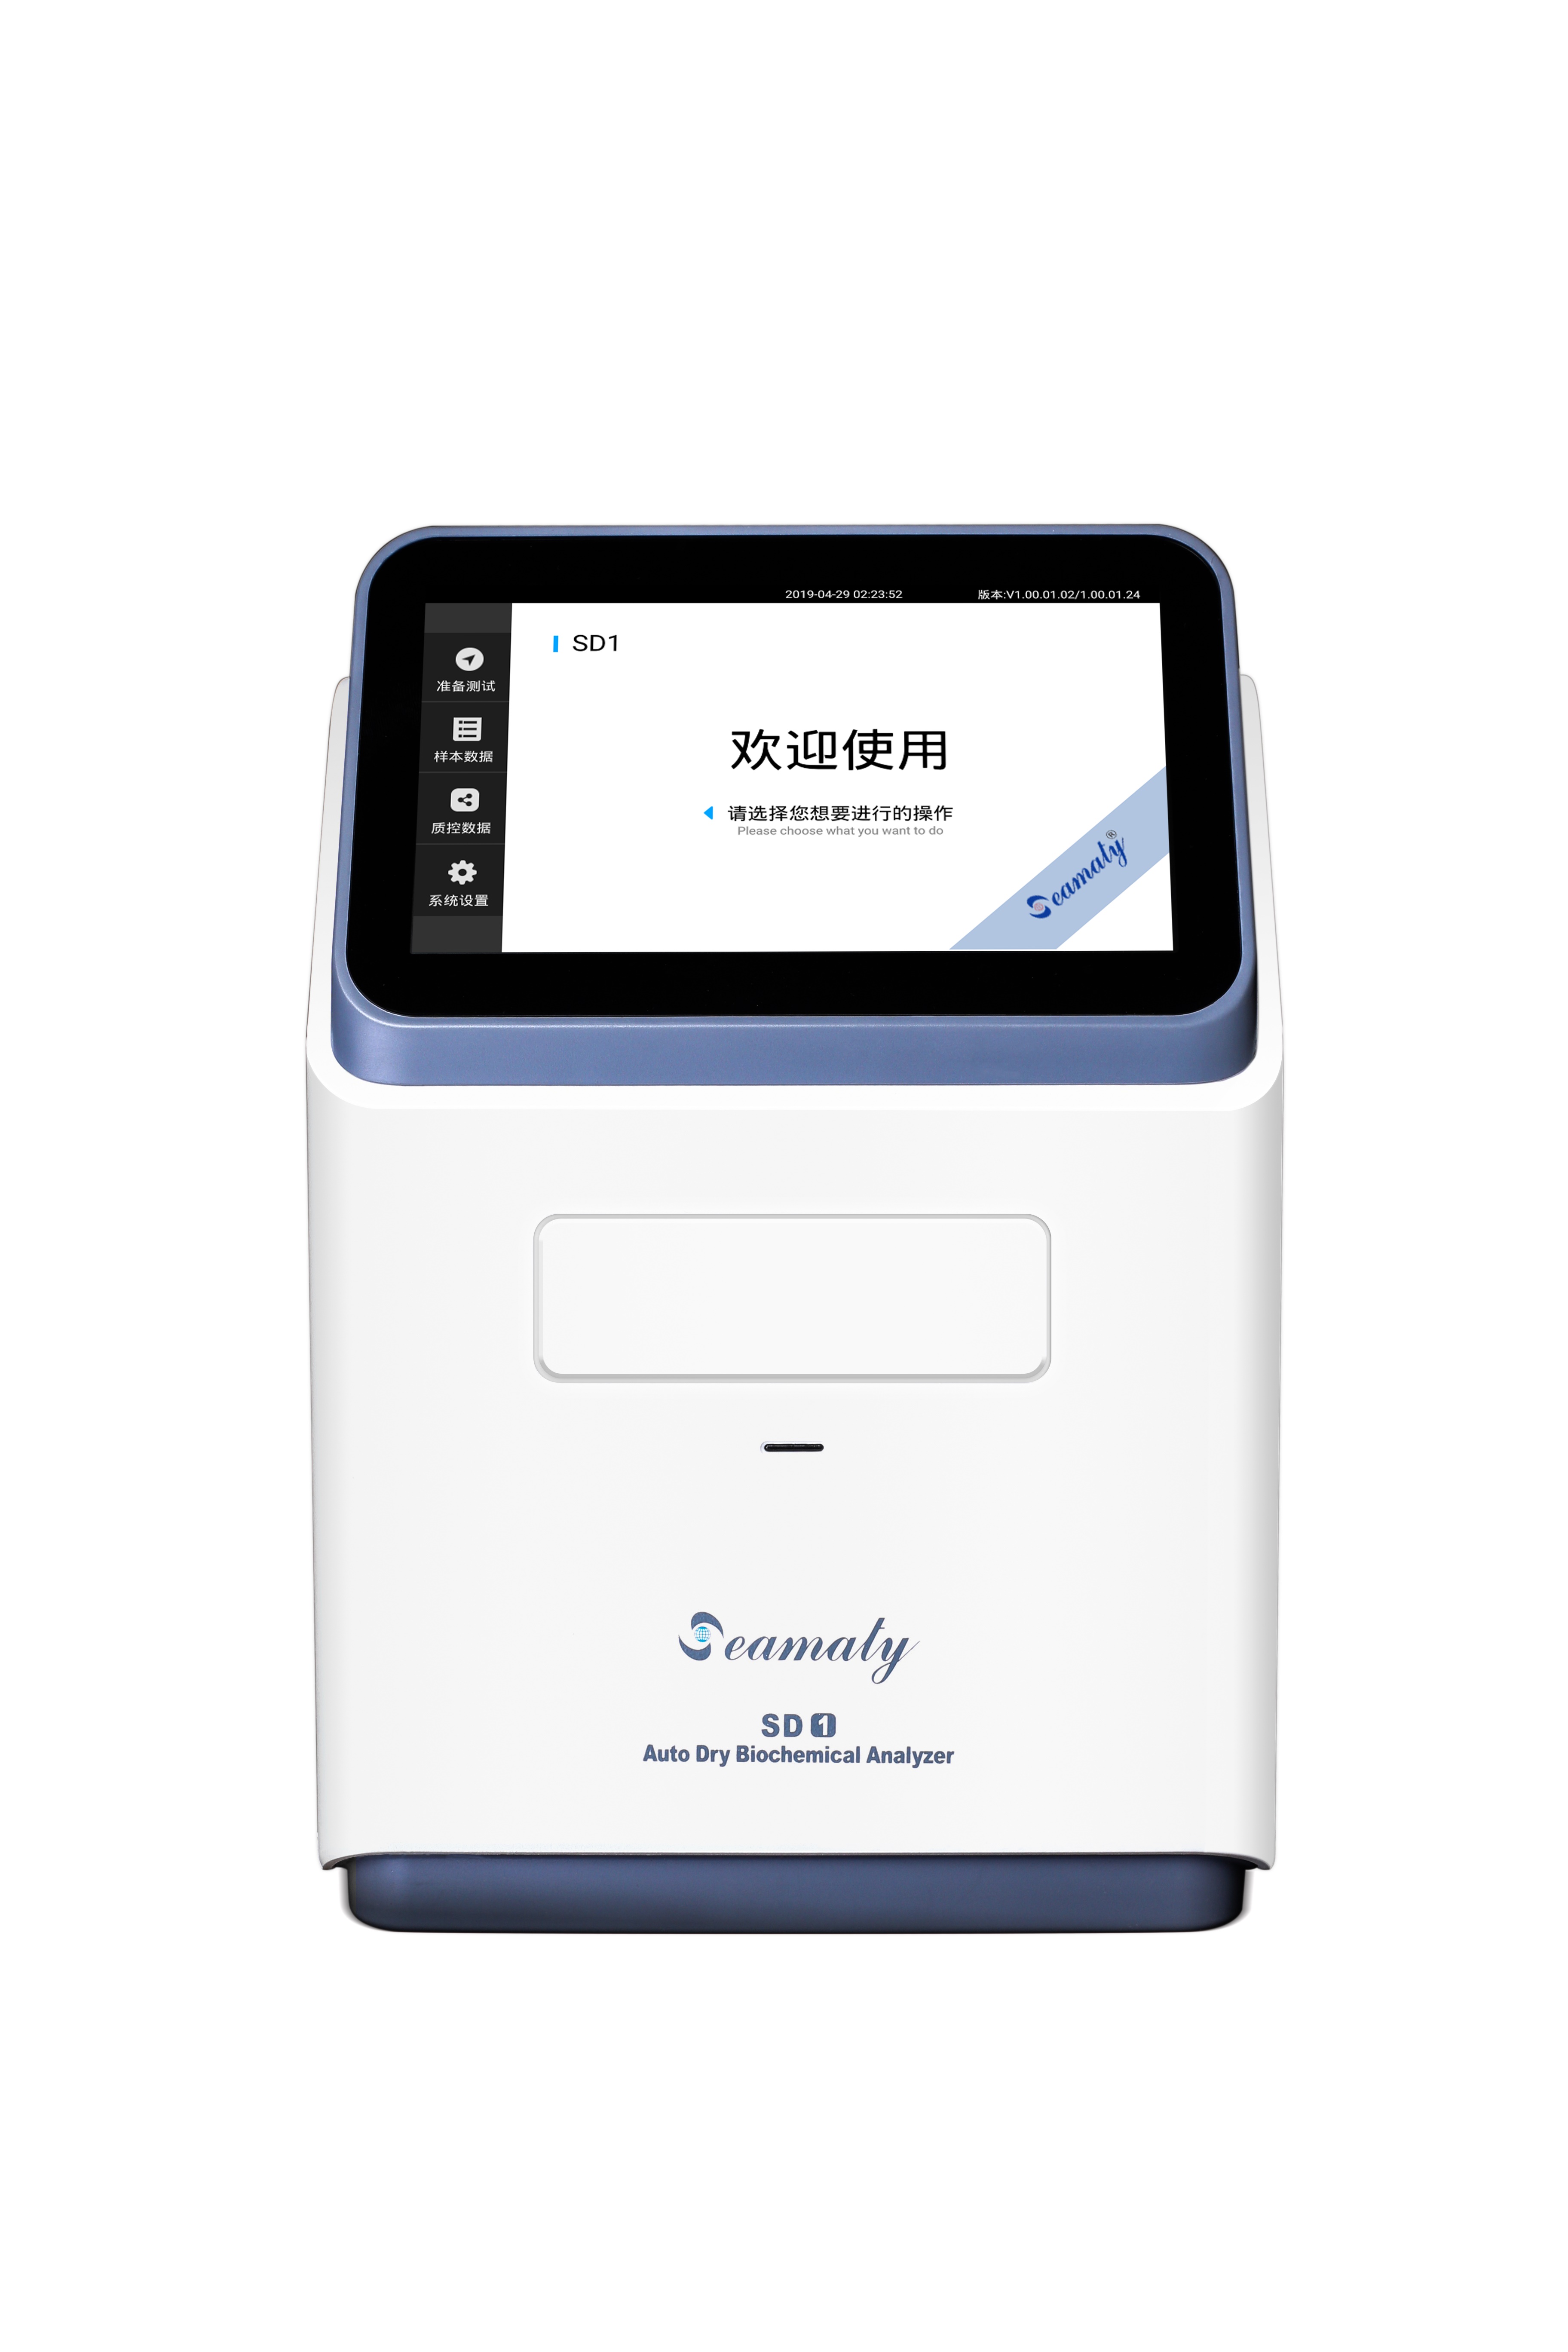 【斯马特】斯马特SD1全自动干式生化分析仪